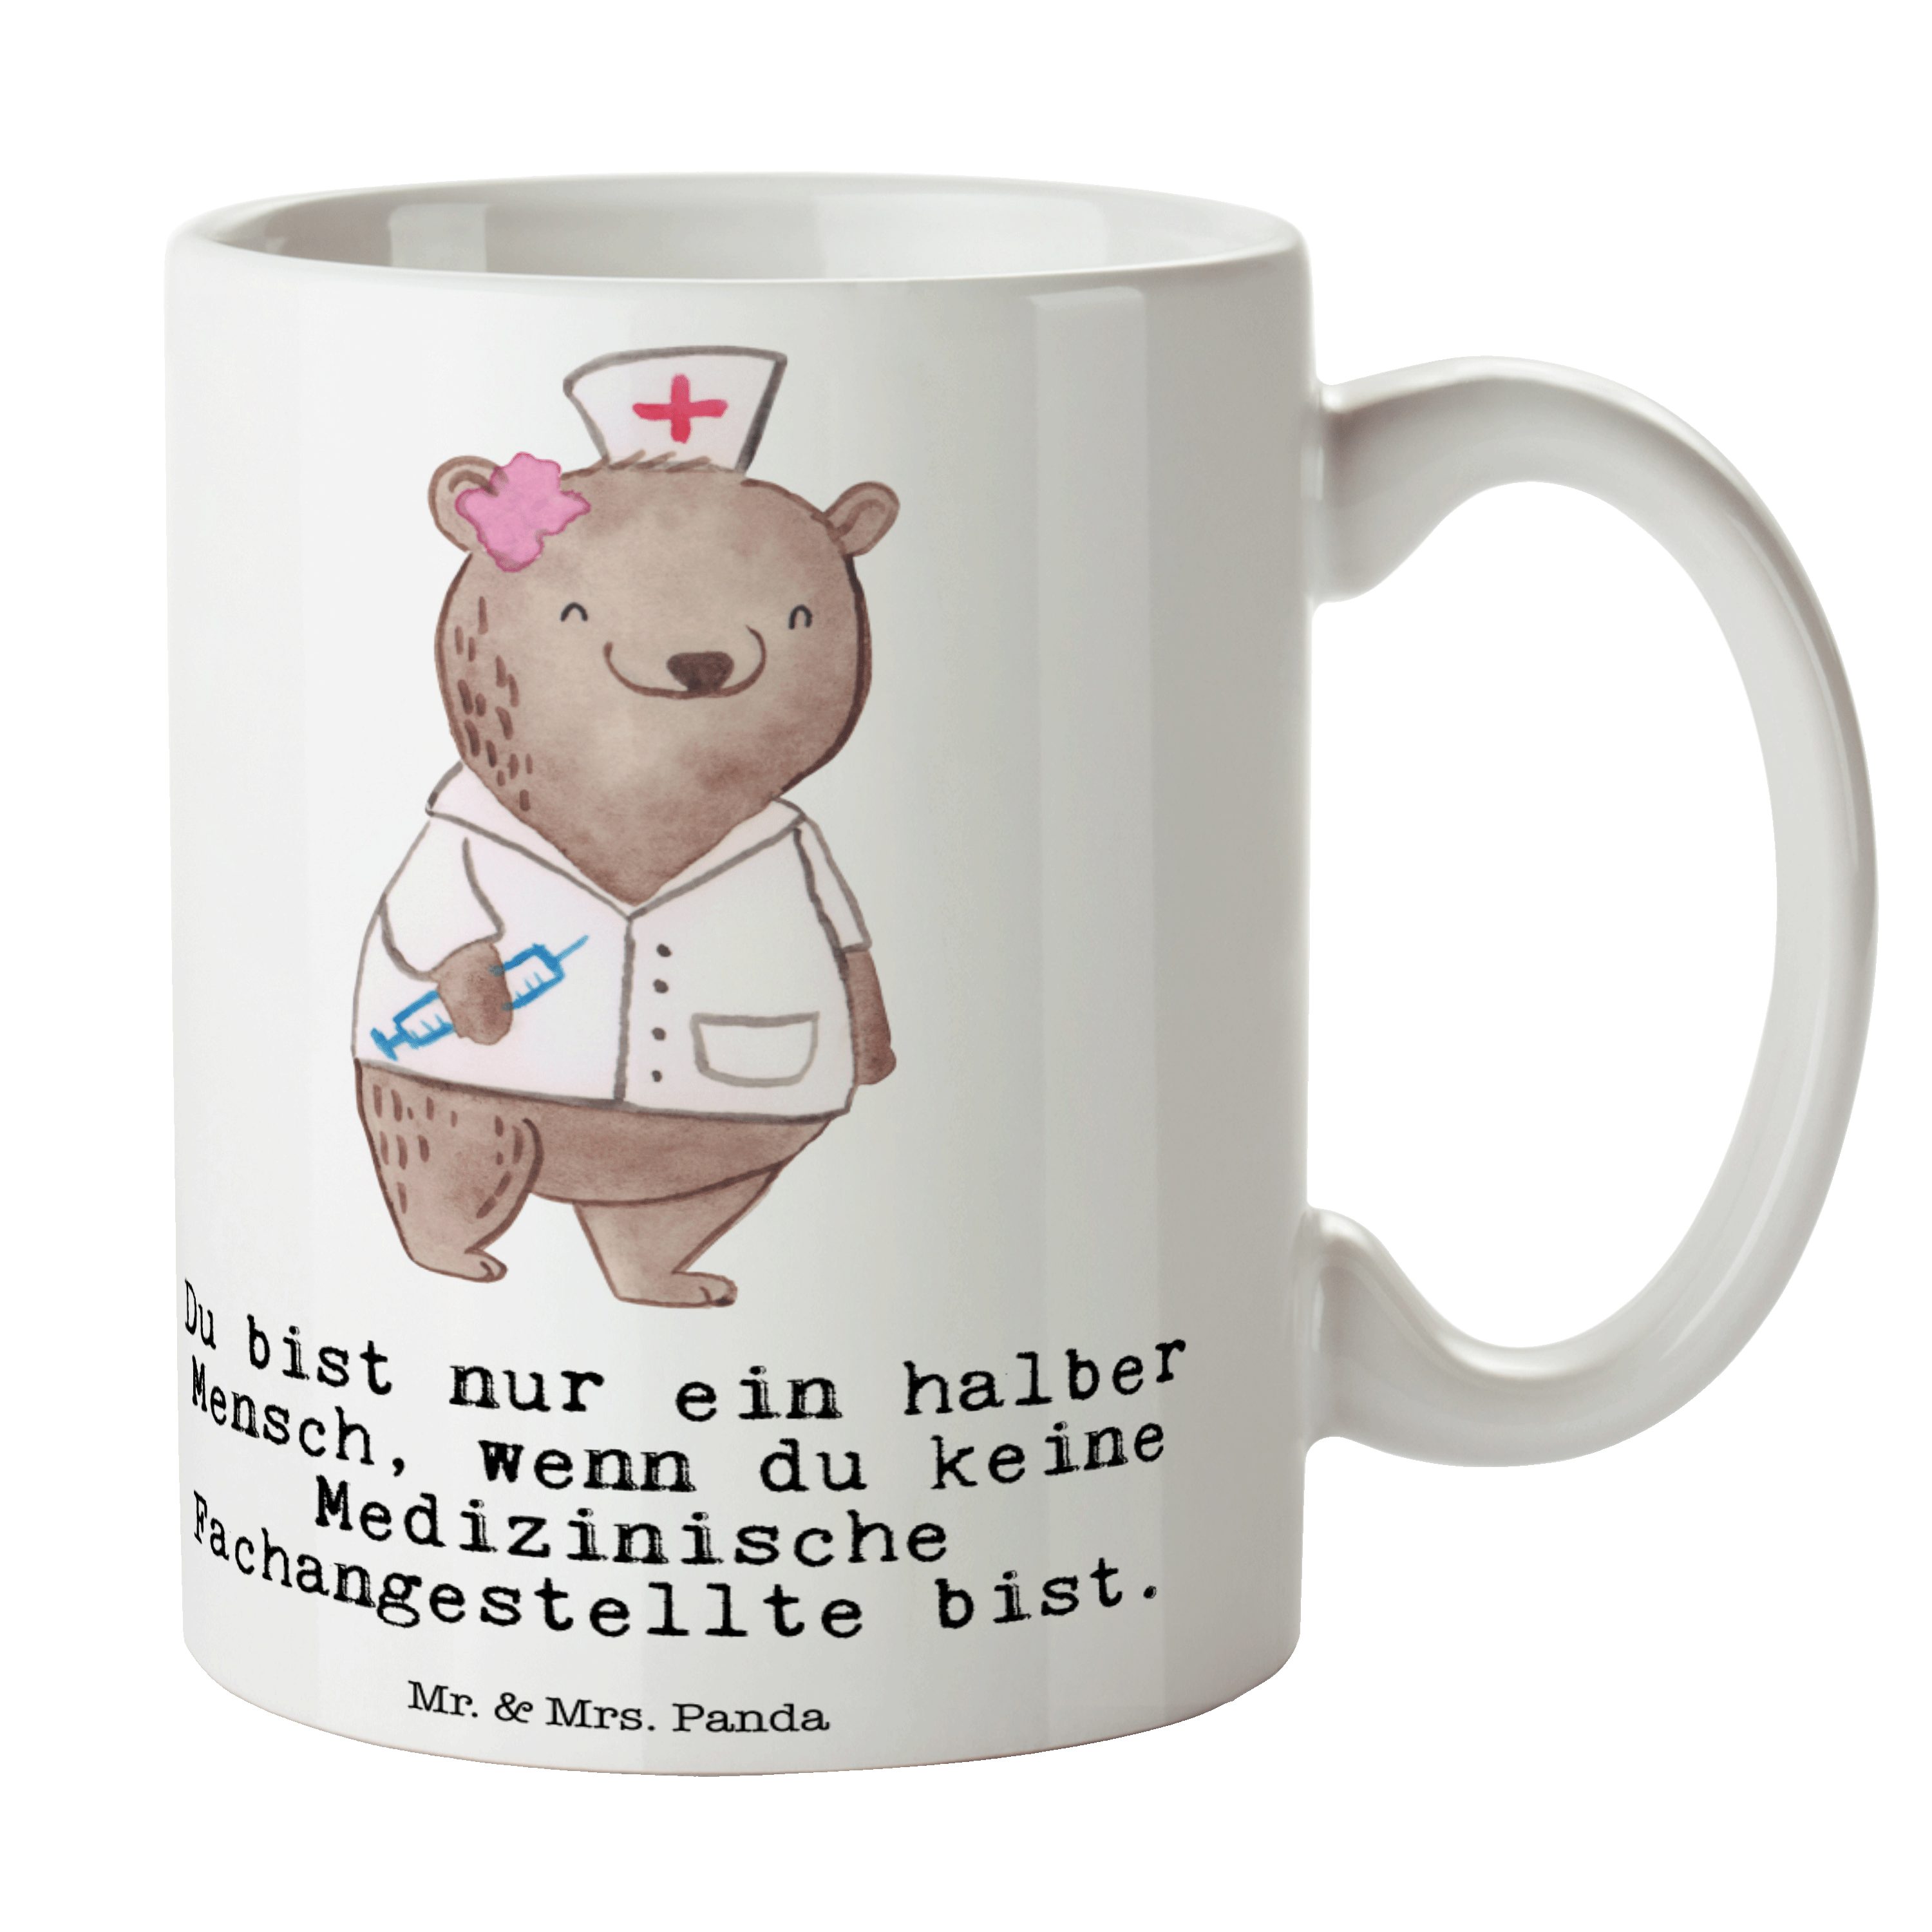 Mr. & Mrs. Panda Tasse Medizinische Fachangestellte mit Herz - Weiß - Geschenk, Büro Tasse, Keramik